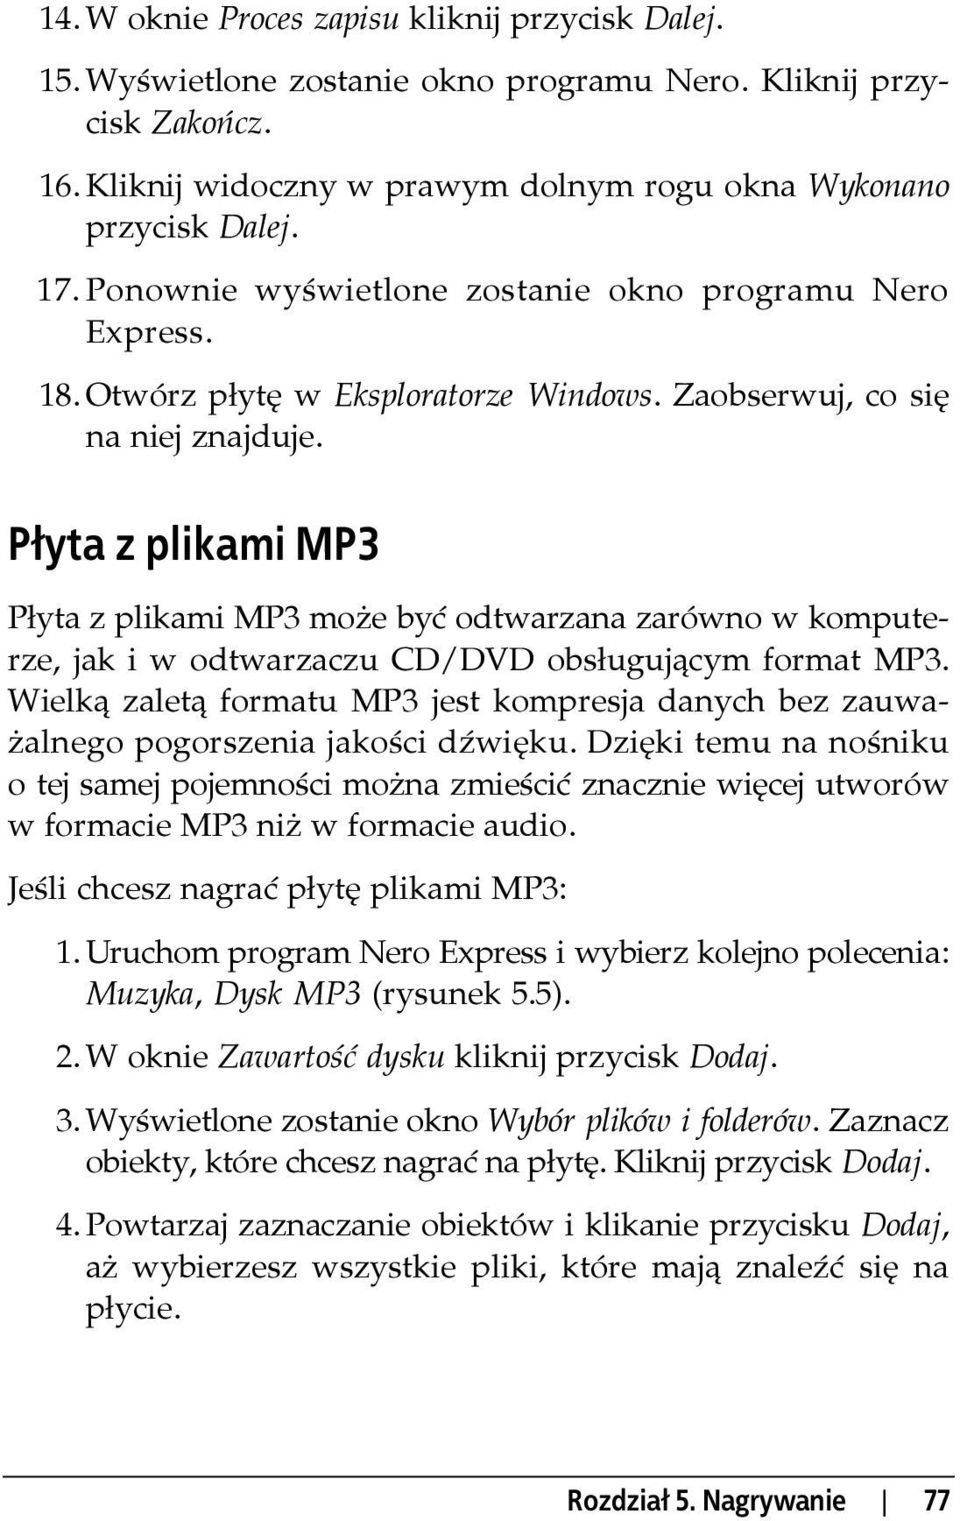 Płyta z plikami MP3 Płyta z plikami MP3 może być odtwarzana zarówno w komputerze, jak i w odtwarzaczu CD/DVD obsługującym format MP3.